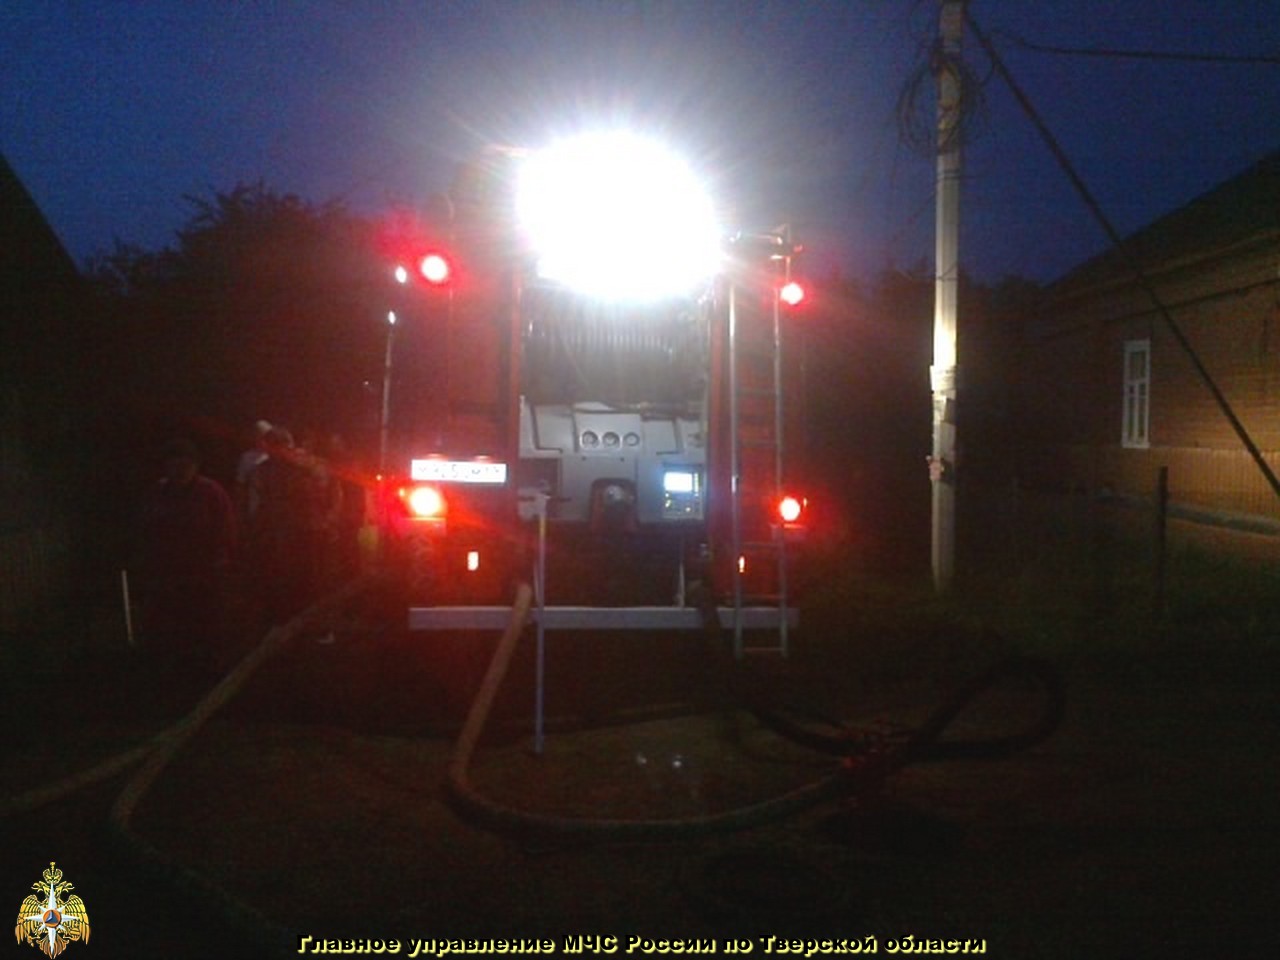 Пожарные Тверского гарнизона пожарной охраны спасли из горящего помещения мужчину